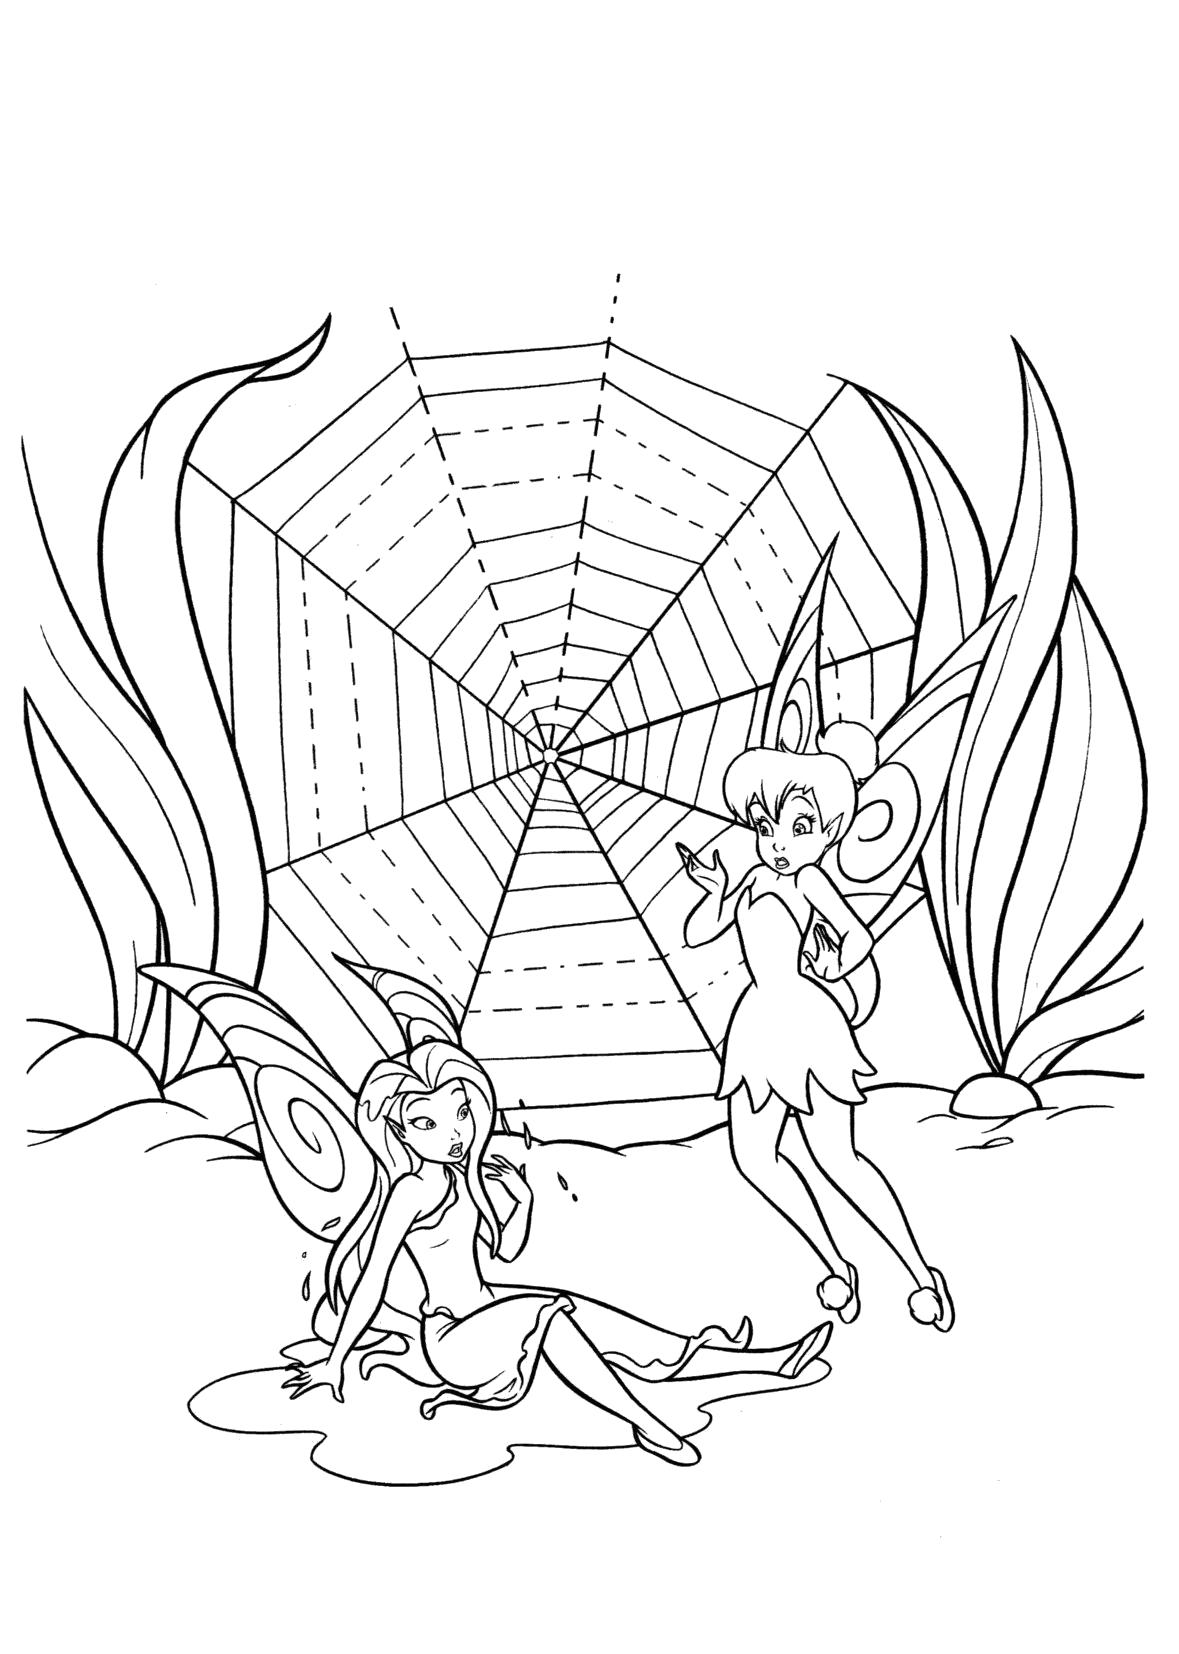 Название: Раскраска Раскраска Серебрянка и Динь-Динь рядом с паутиной. Категория: мифические существа. Теги: фея.